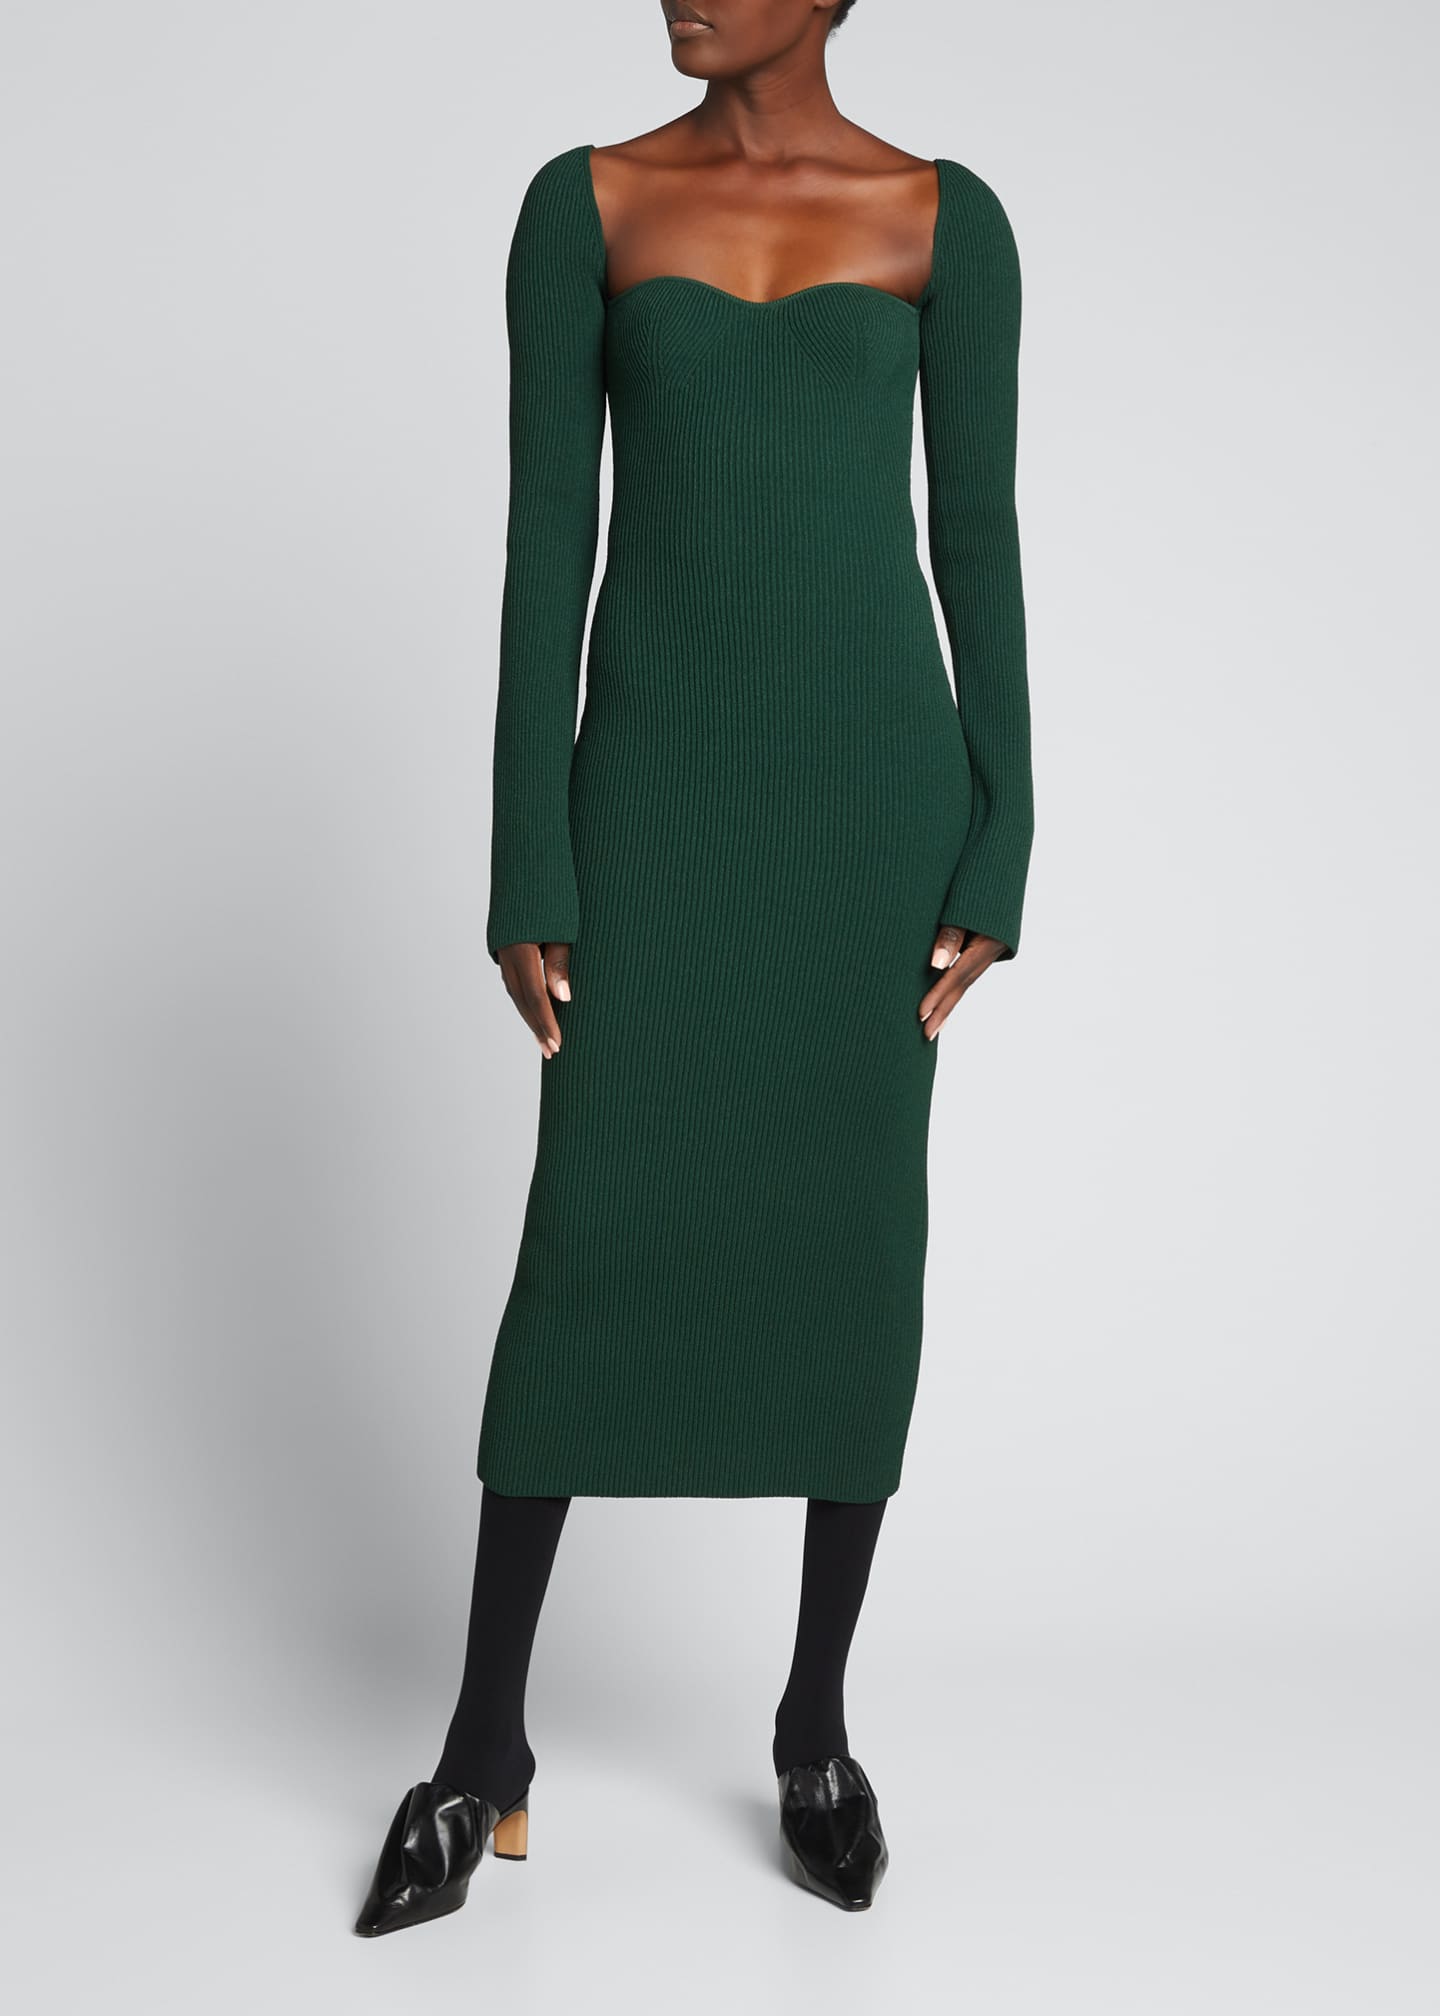 Khaite Beth Long-Sleeve Bustier Dress - Bergdorf Goodman